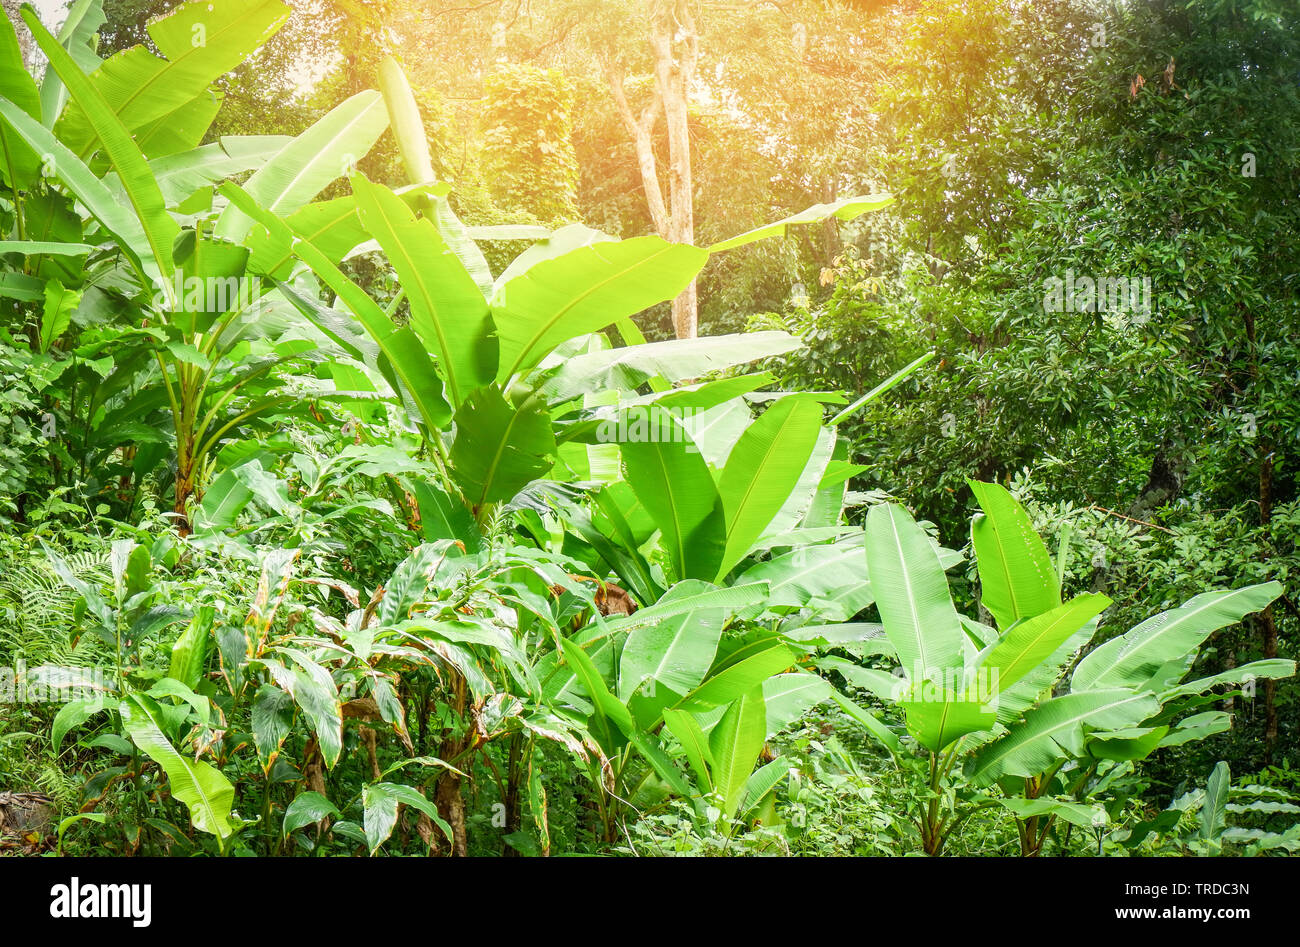 Bananenstaude wachsenden Bananen im Feld grünen Dschungel Natur tropische Pflanze Hintergrund Stockfoto